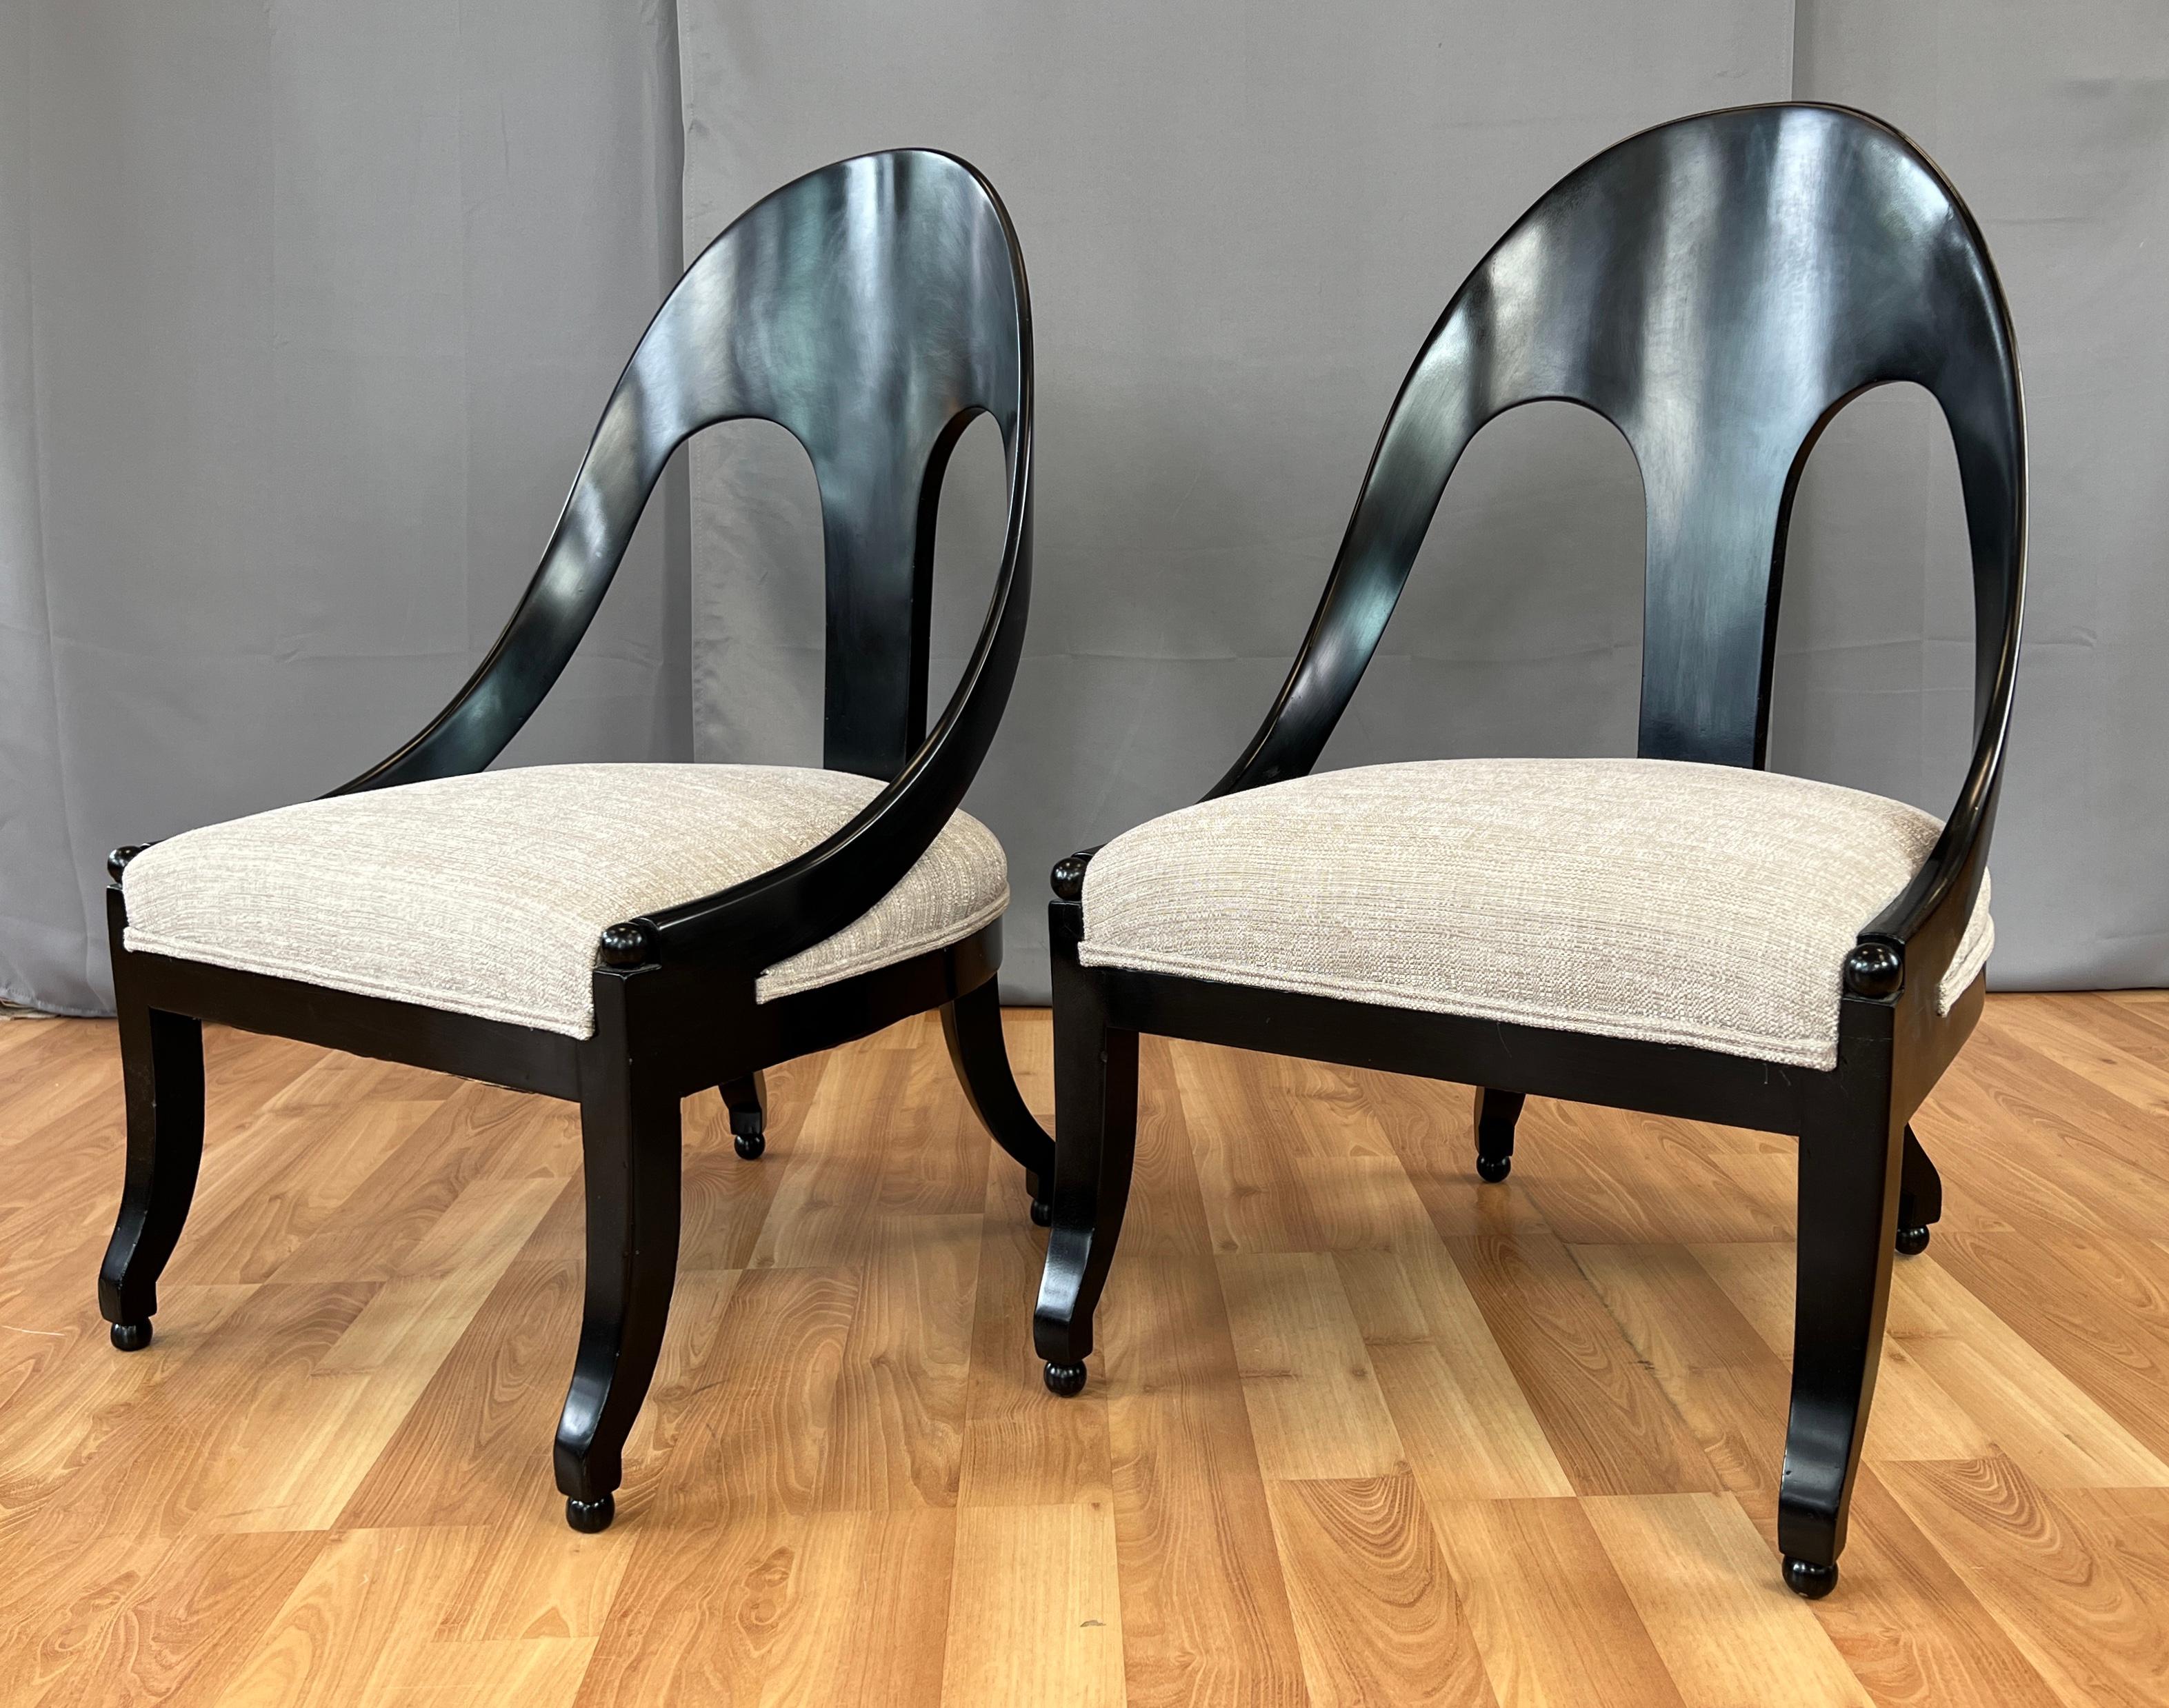 Angeboten wird ein Paar Löffelstühle im neoklassischen Stil, entworfen von Michael Taylor für Baker Furniture.
Schwarzer Rahmen mit beiger Polsterung, die sich wie eine schwere Baumwollmischung anfühlt. Die Polsterung sieht neu aus, der Schaumstoff